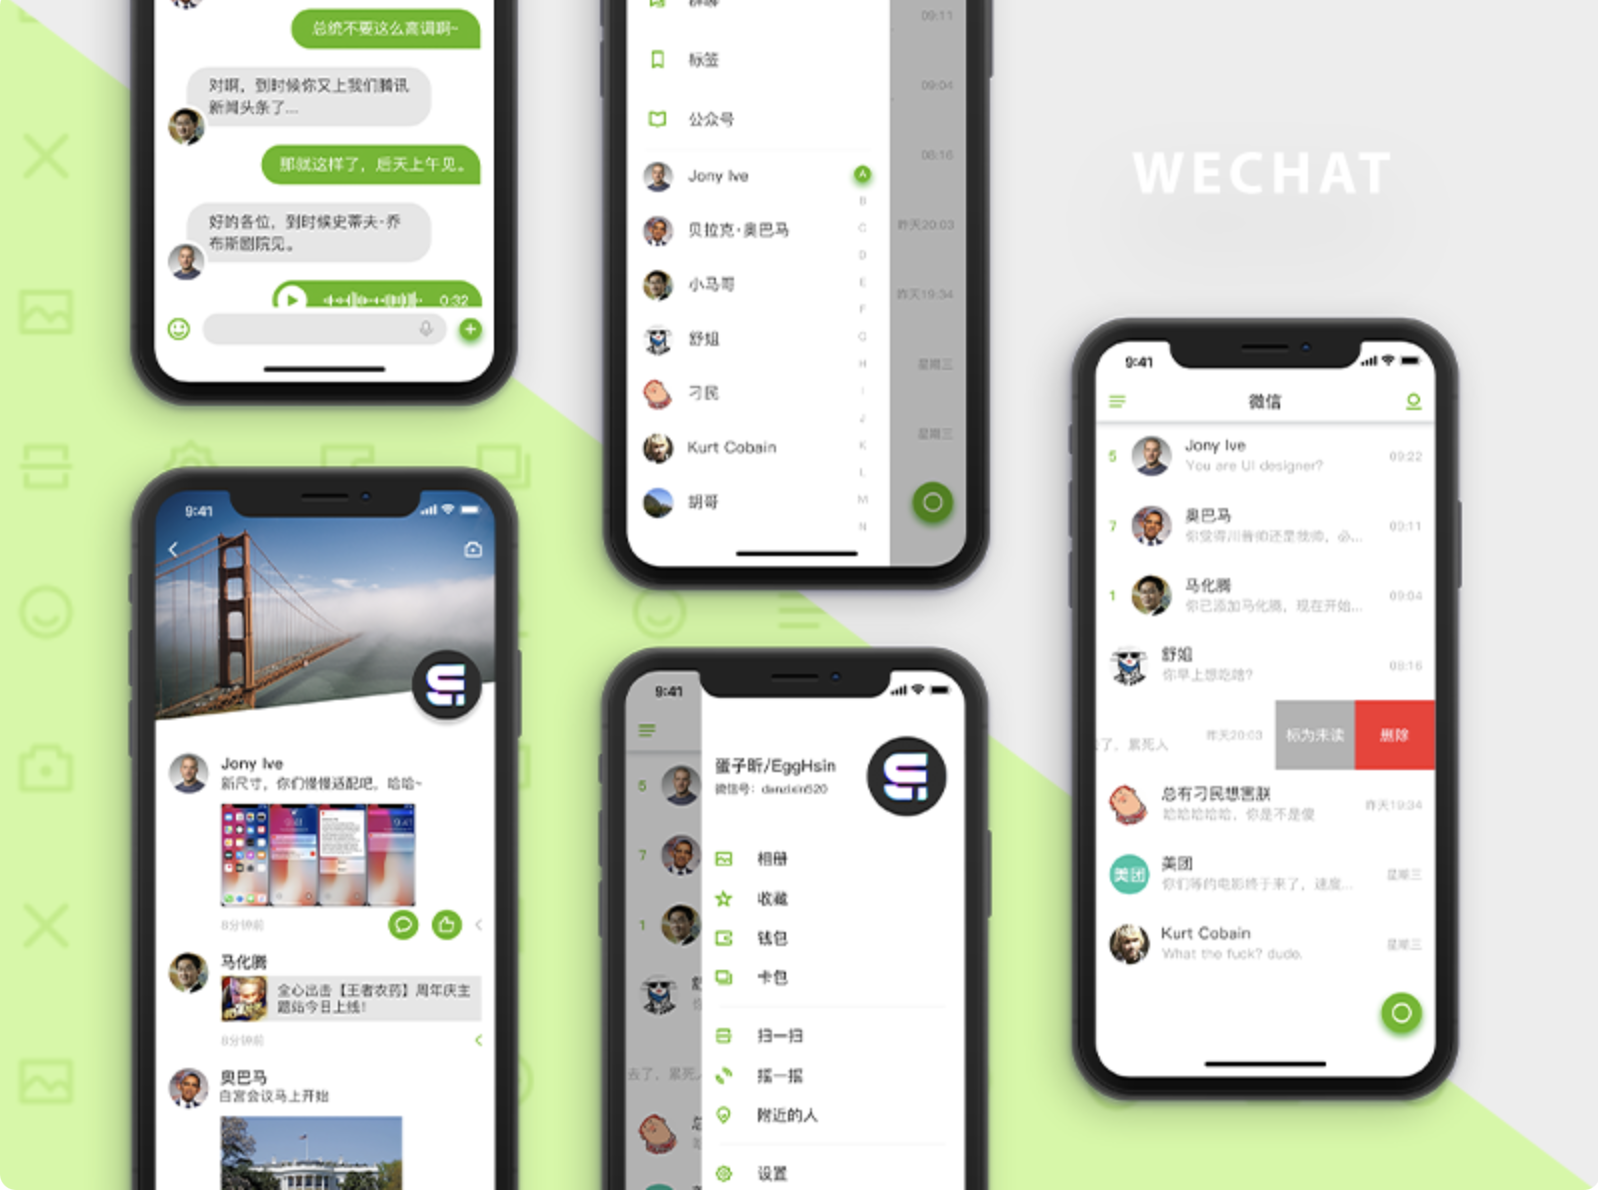 Gibt es Möglichkeiten, Konten in WeChat schnell zu hacken?